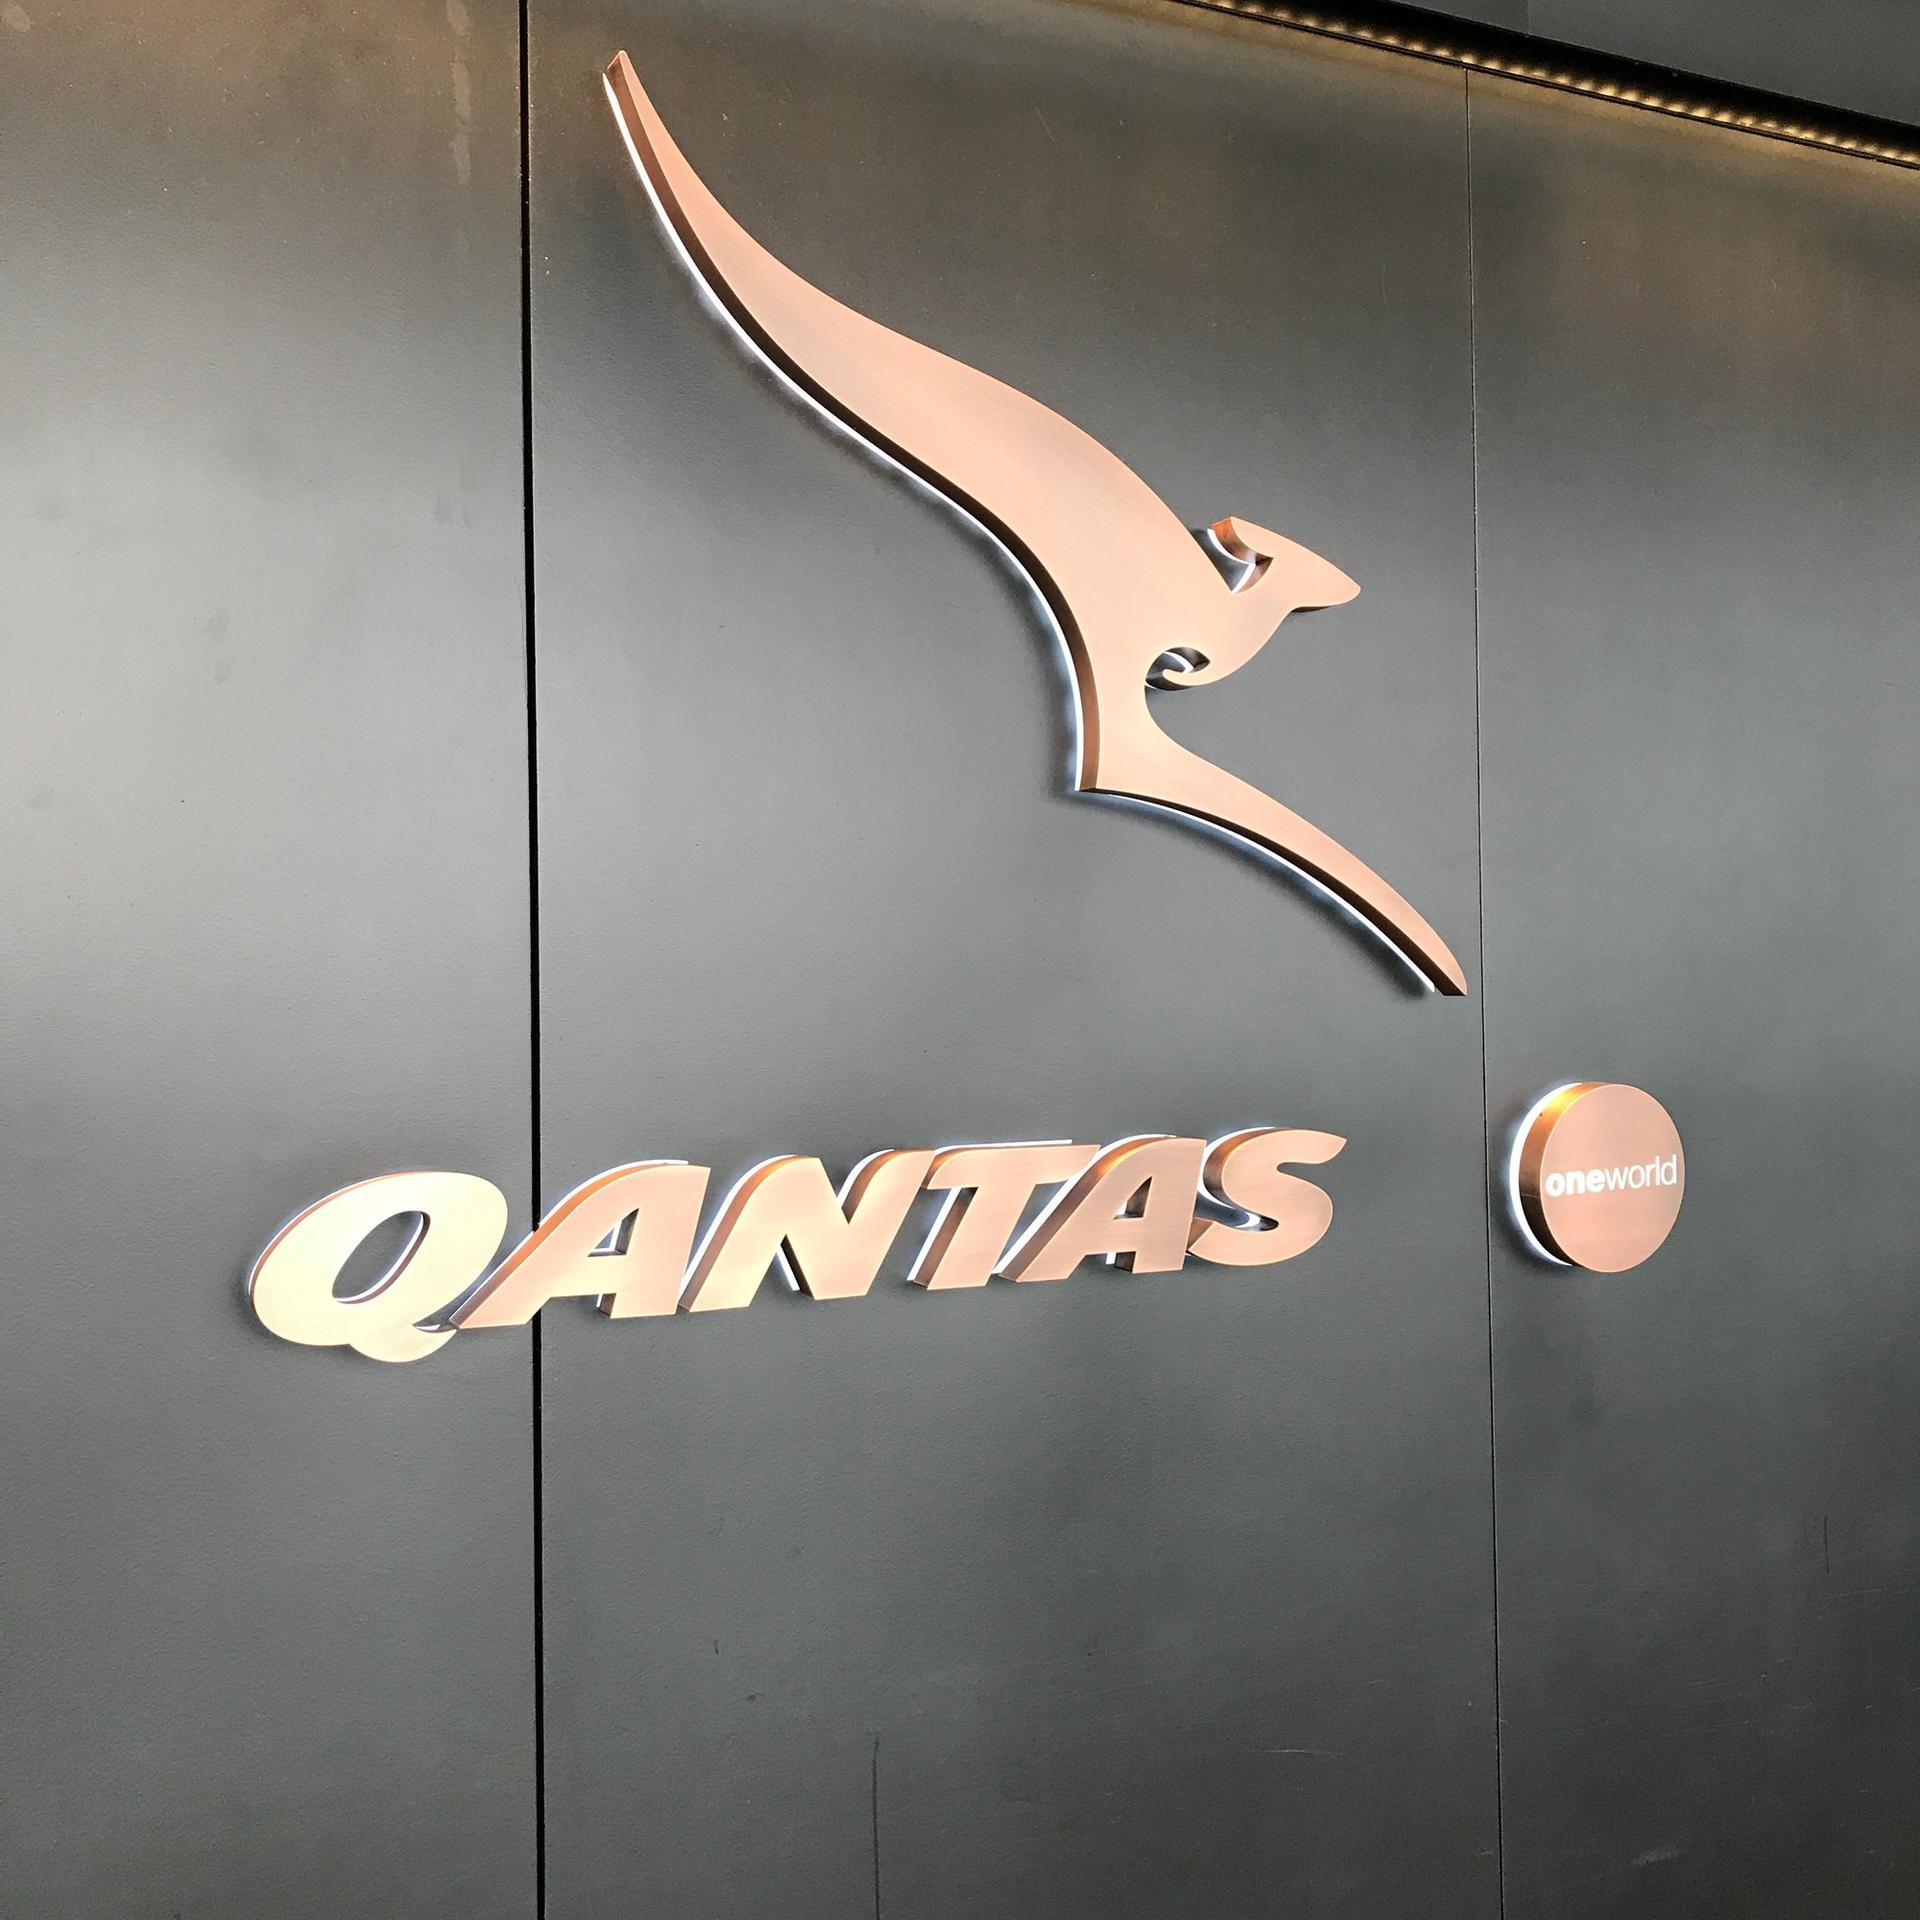 The Qantas Hong Kong Lounge image 77 of 99